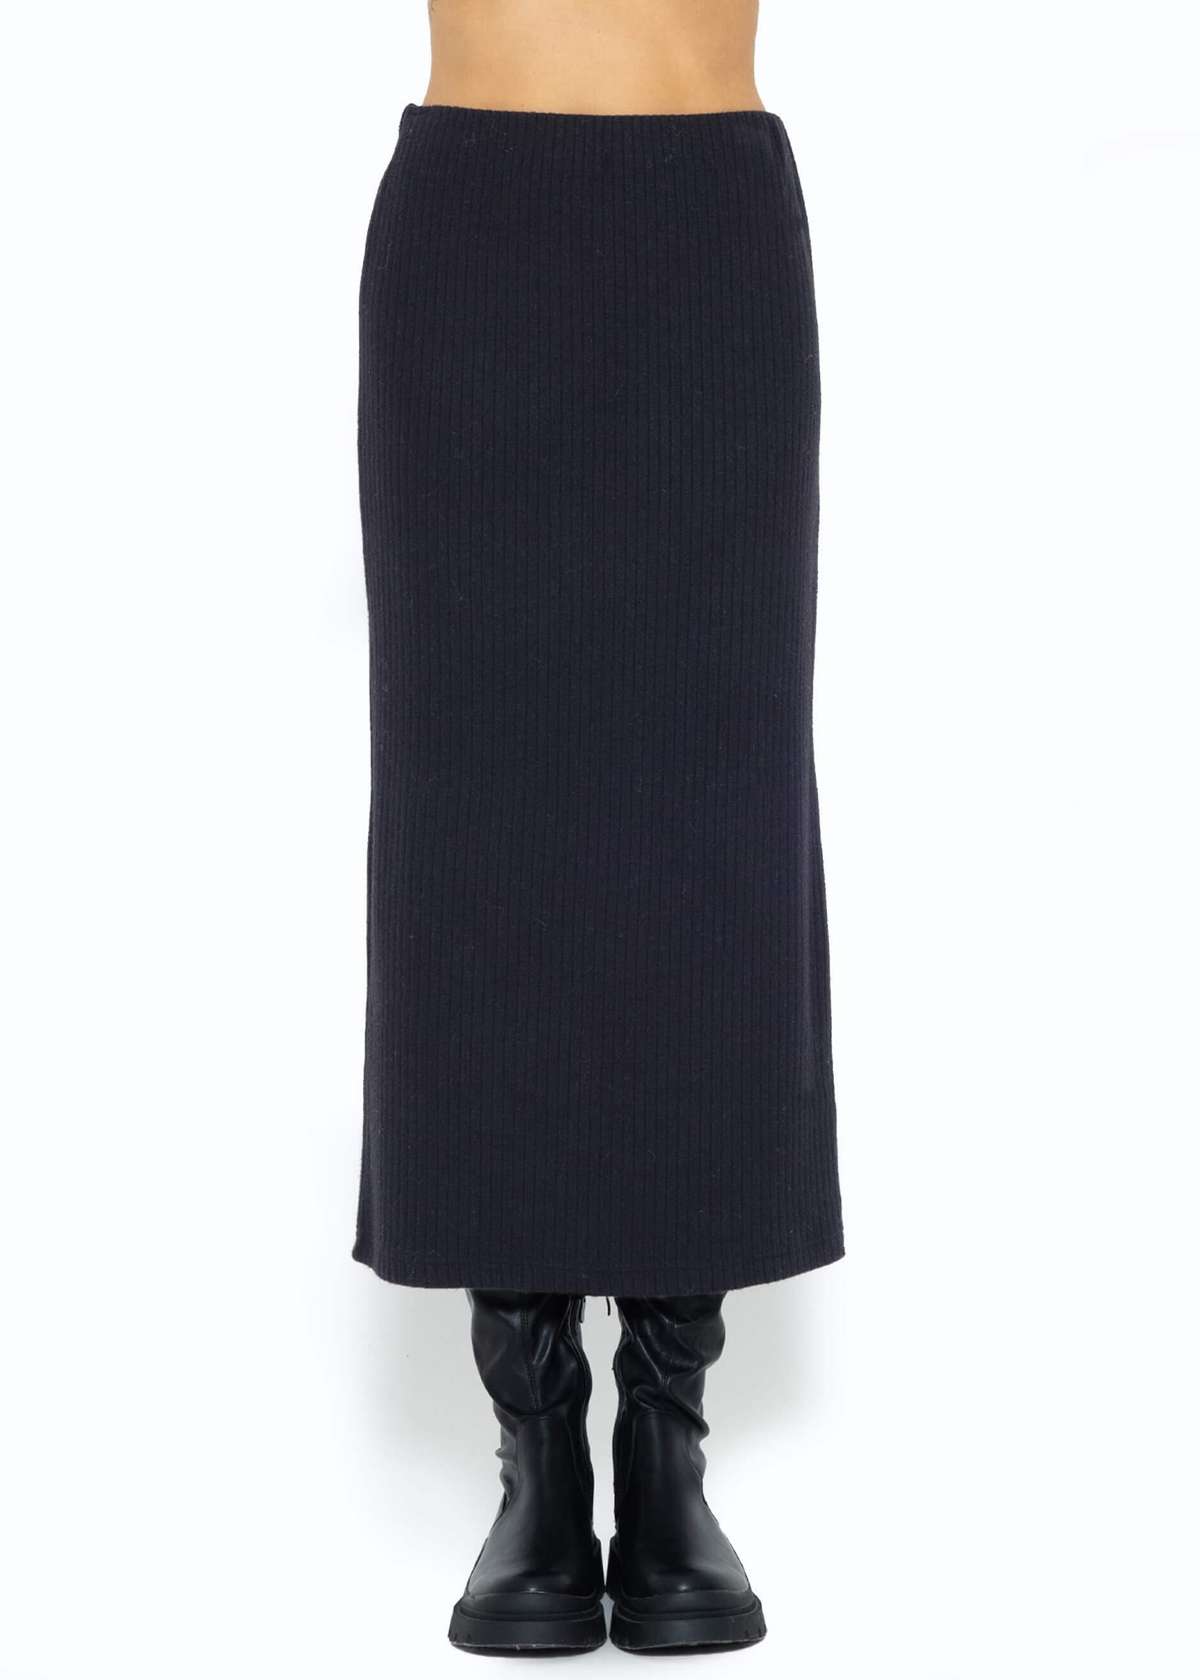 Трикотажная юбка женская длинная юбка из вискозы юбка-карандаш с завышенной талией трикотажная юбка на резинке женская юбка-труба